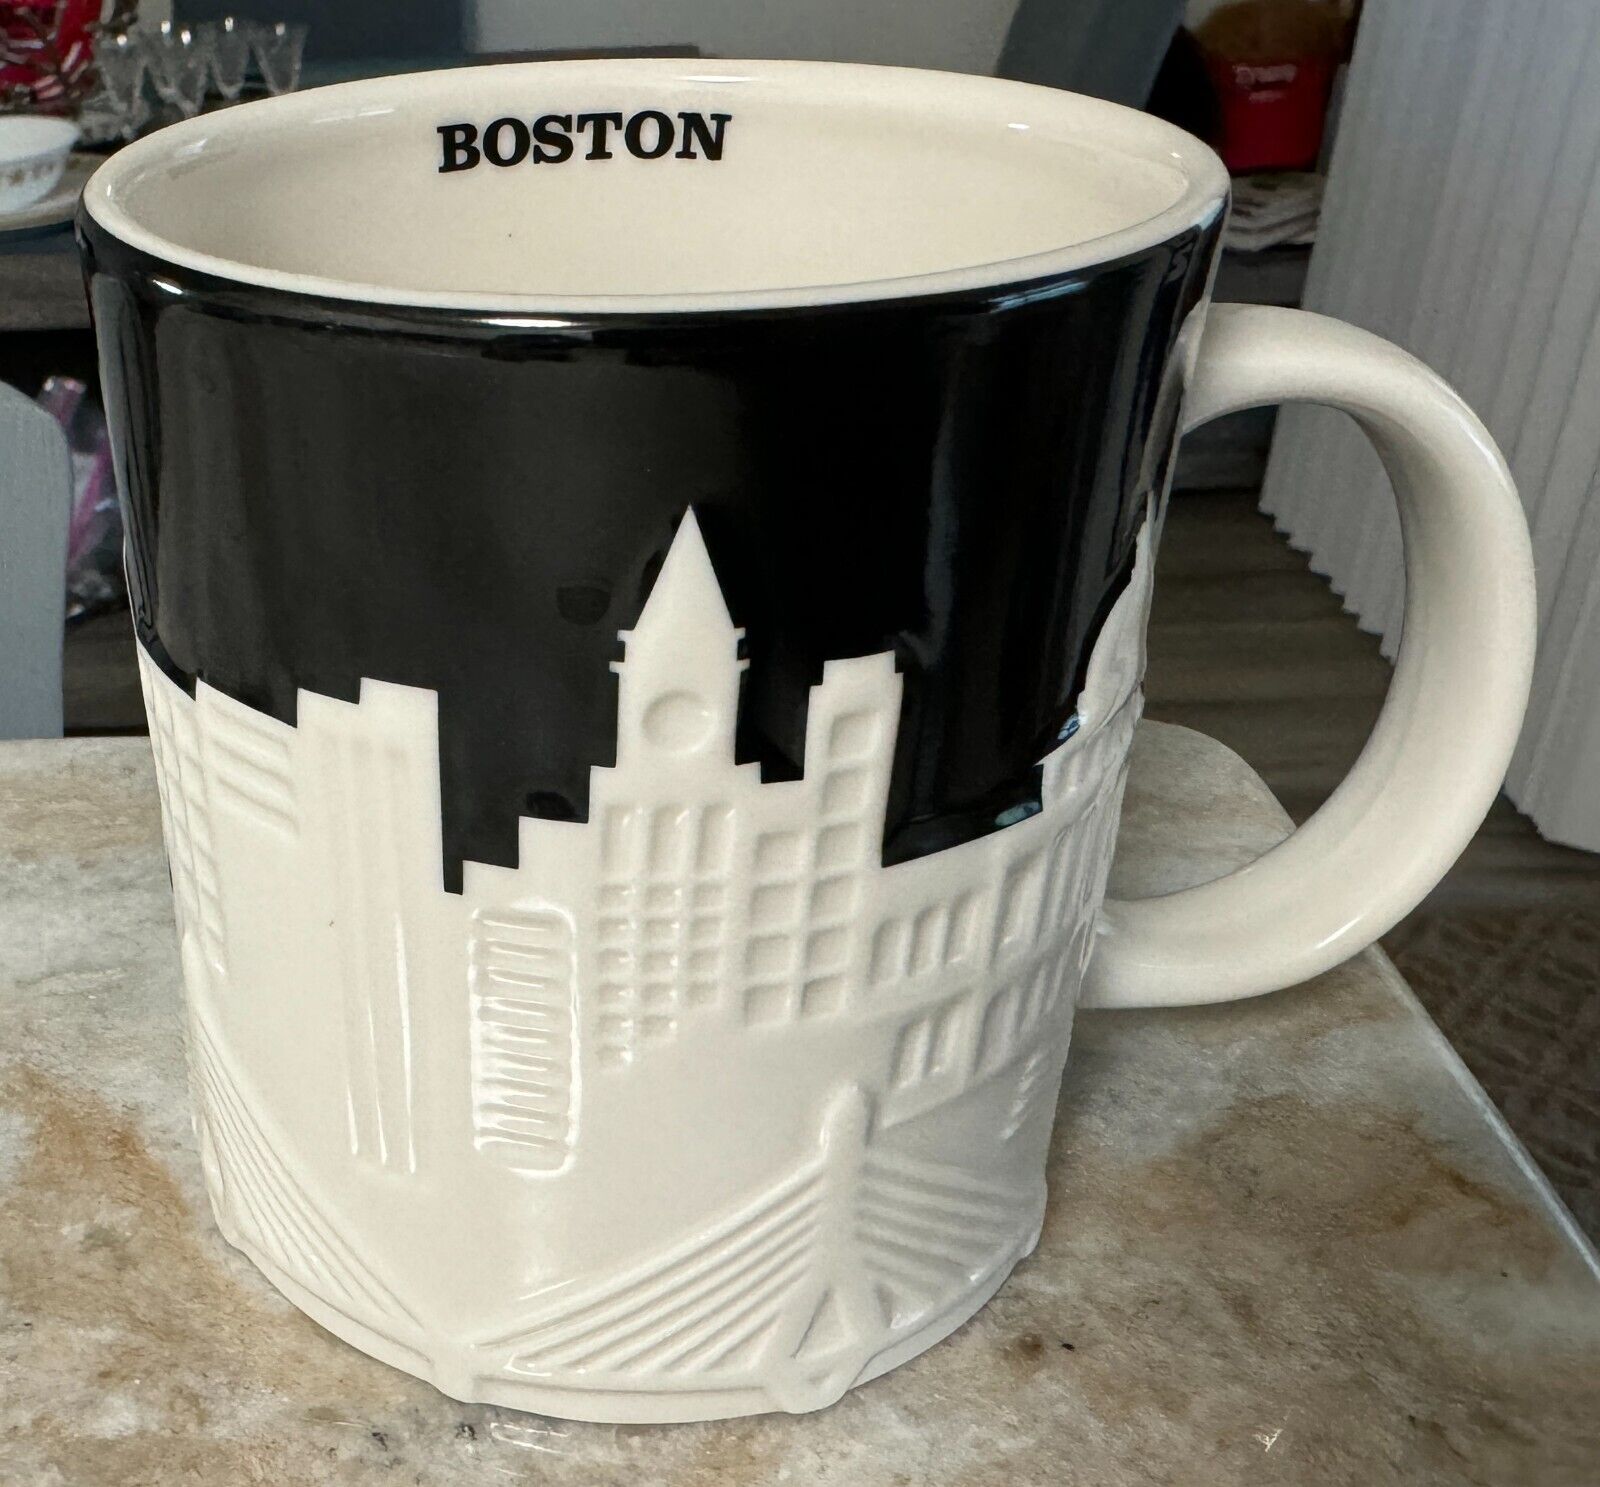 RARE Starbucks 2012 Boston Collector Series Relief Mug, 16 oz. NEW Condition